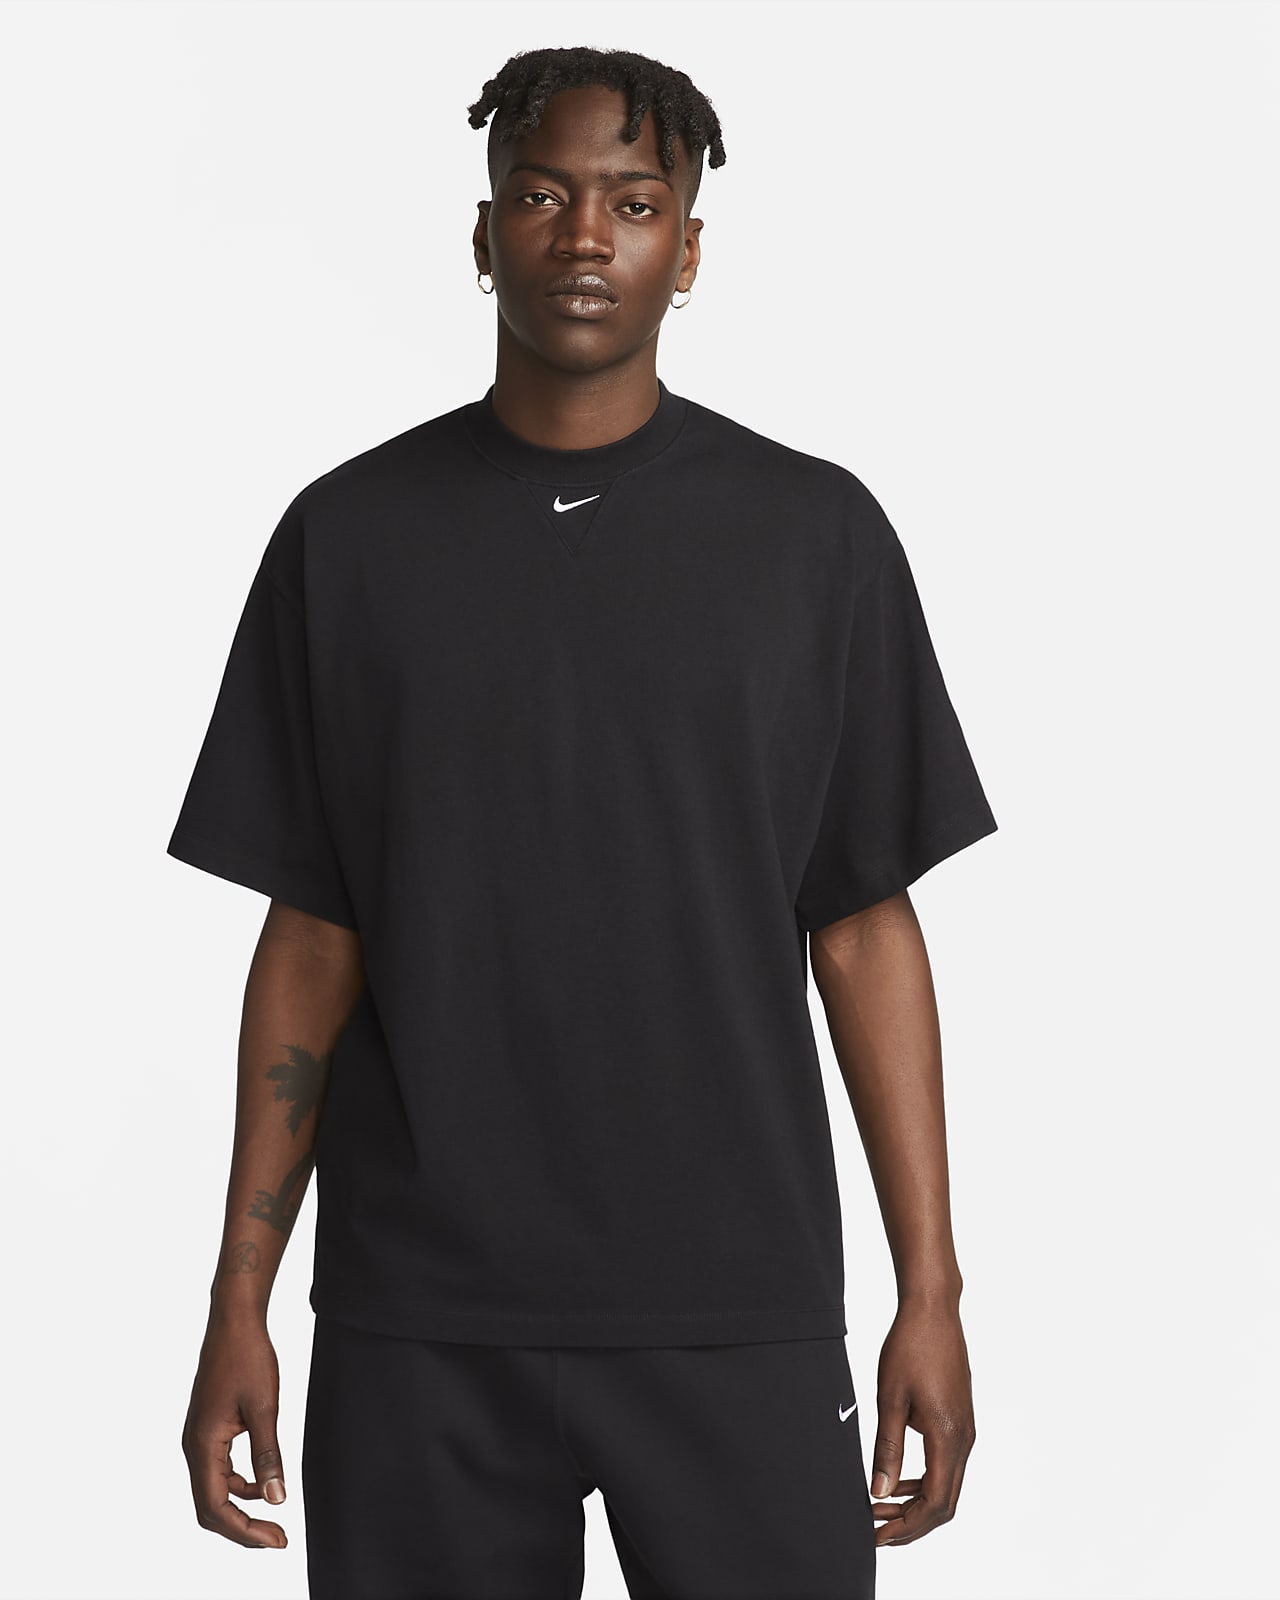 Ανδρική κοντομάνικη μπλούζα από βαρύ ύφασμα Nike Solo Swoosh